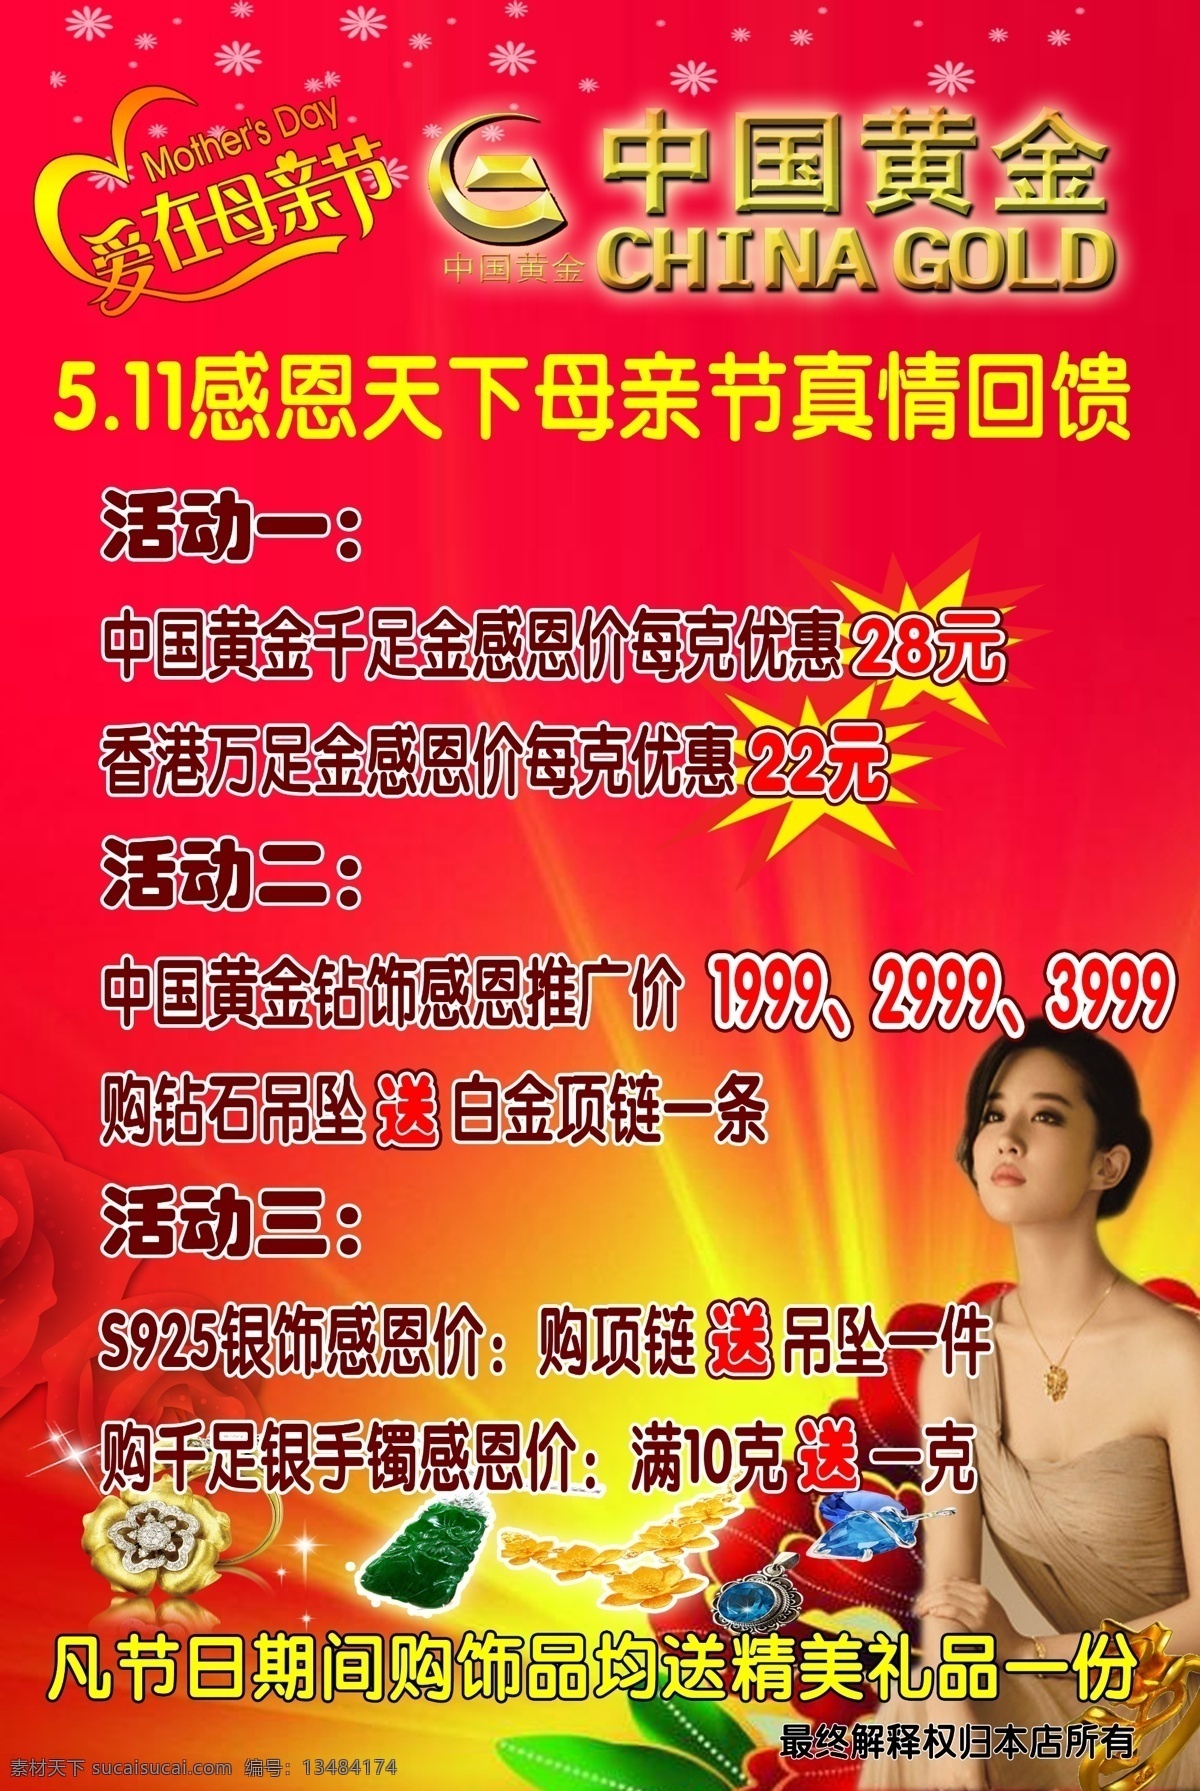 中国黄金 母亲节 中国黄金海报 中国黄金广告 中国黄金活动 分层